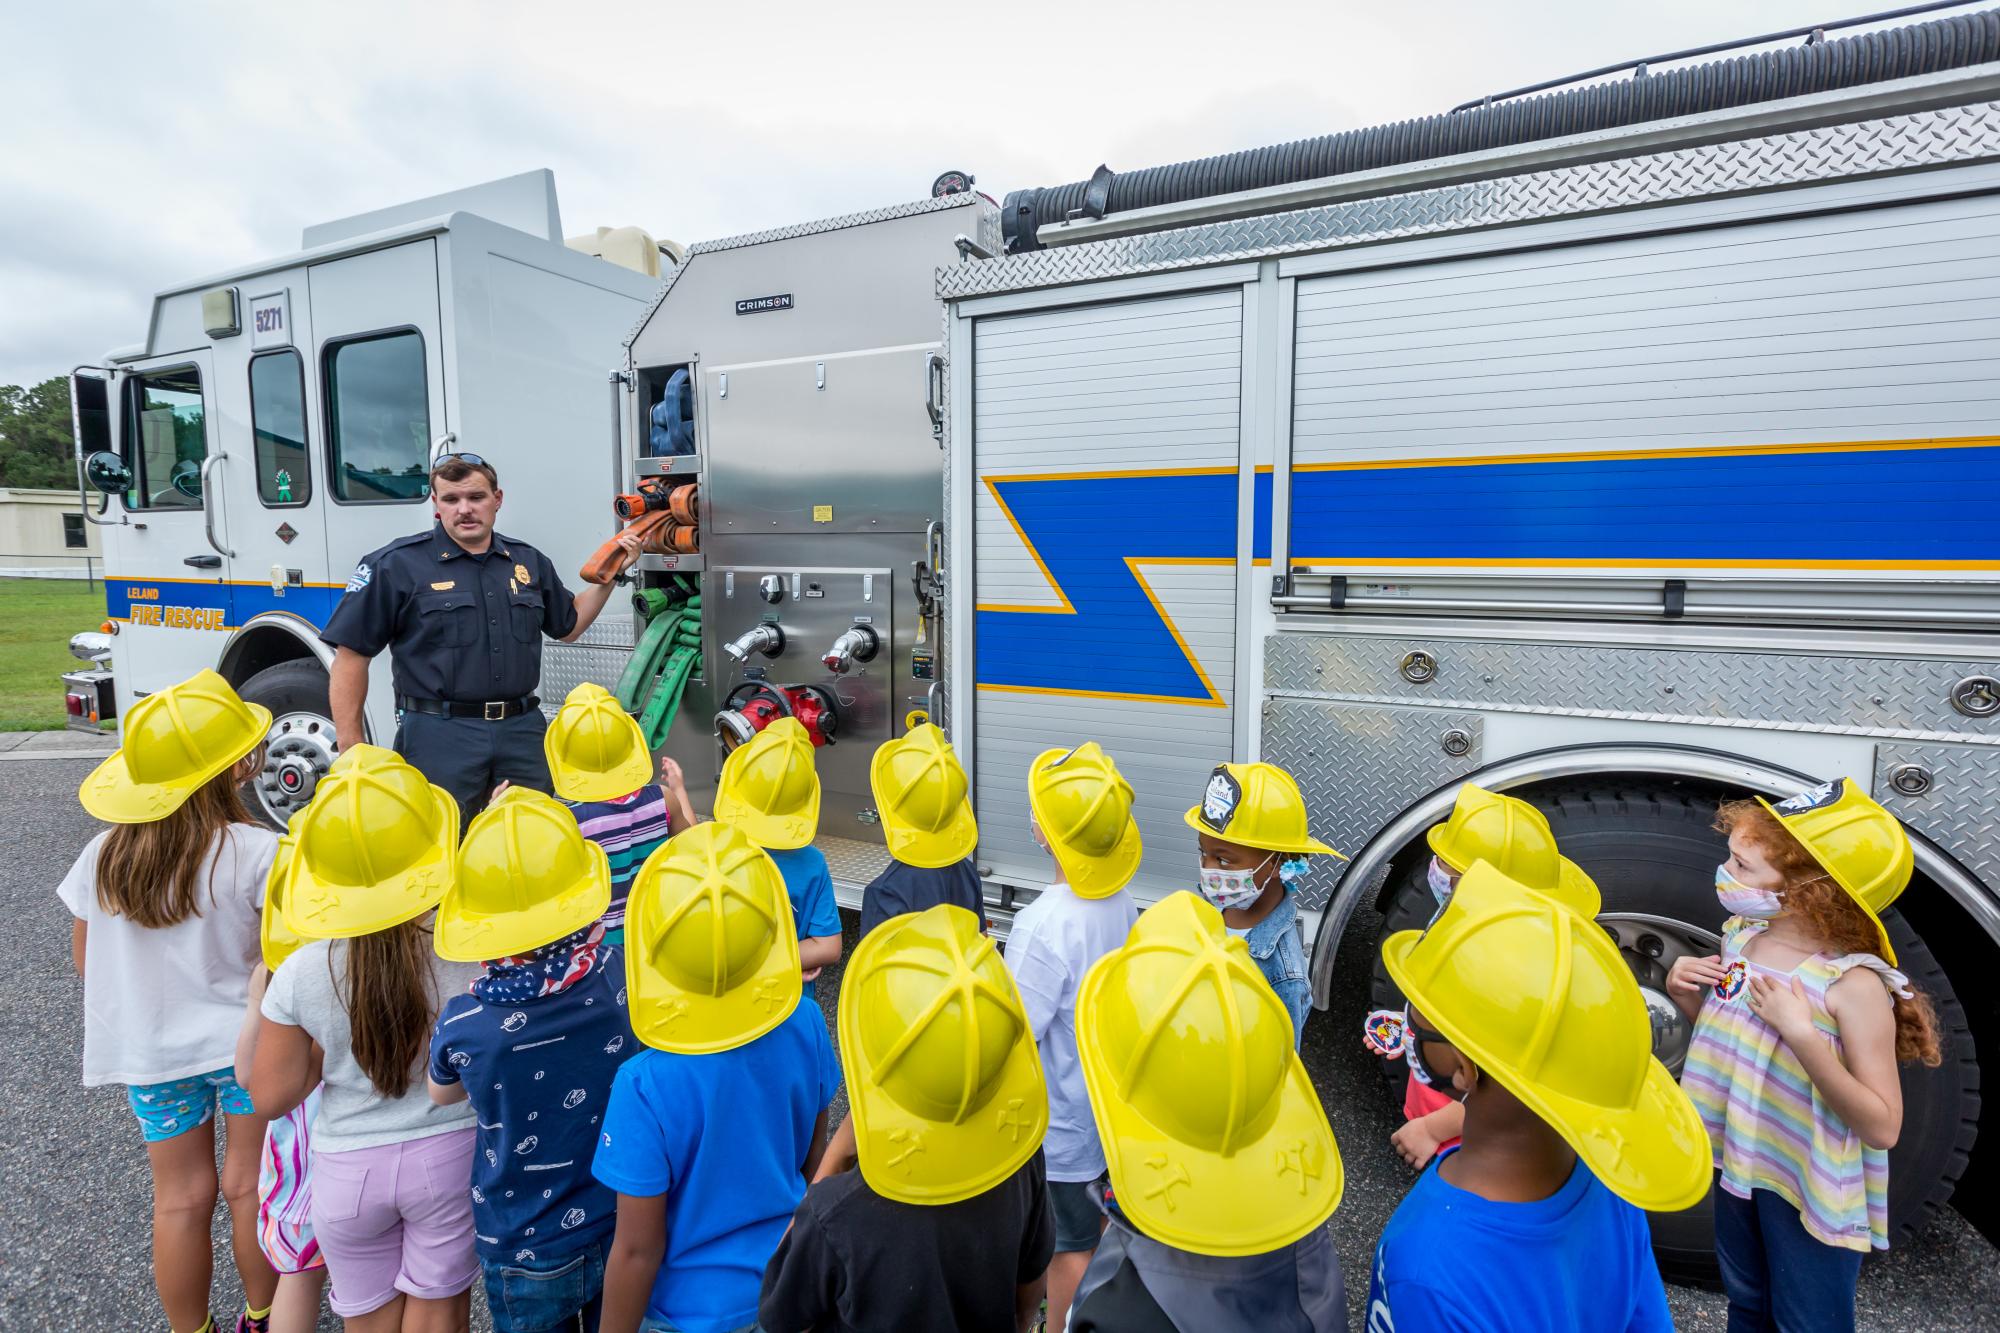 Teaching kids about firetruck